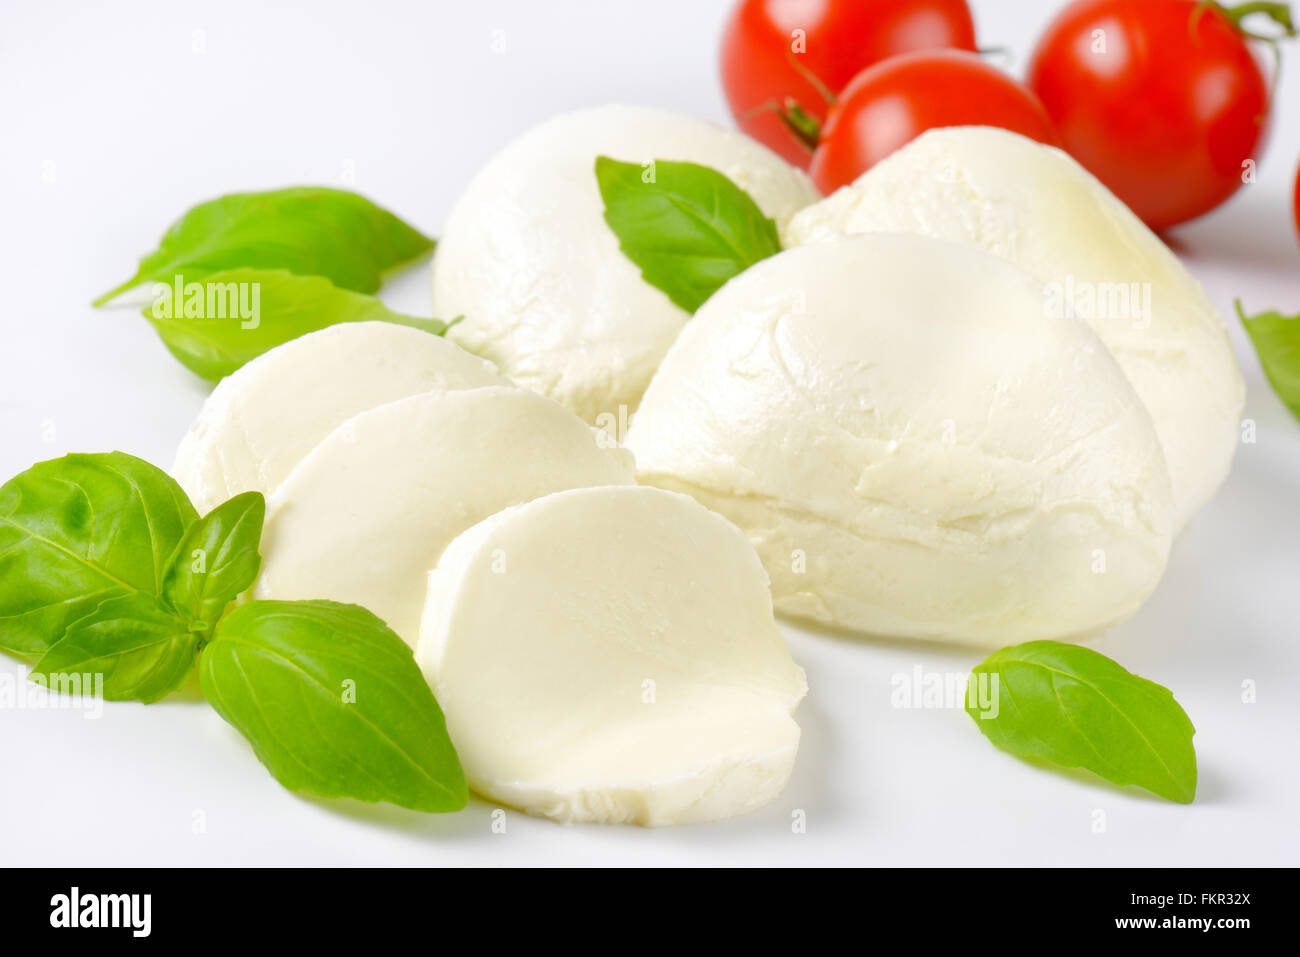 Detalle de mozzarella, tomates cherry y albahaca fresca - Ingredientes para ensalada Caprese Foto de stock